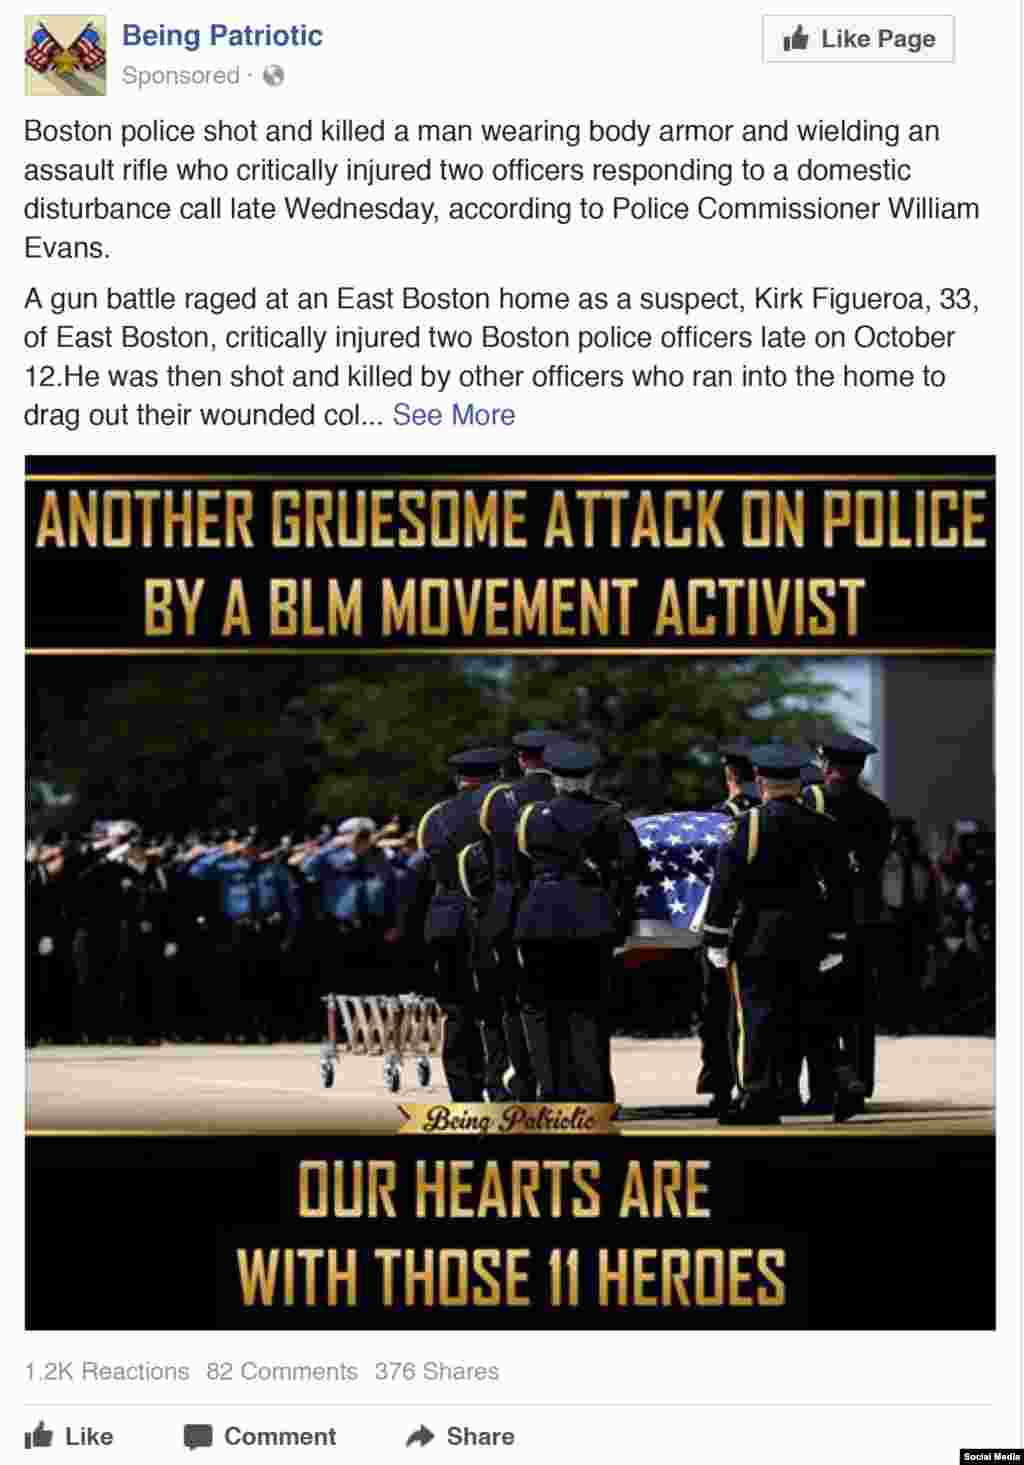 А эта реклама направлена на дискредитацию кампании Black Lives Matter против полицейского насилия. В ней утверждается, что активист BLM убил полицейского. &laquo;Еще одно отвратительное нападение&raquo;, &ndash; гласит реклама.&nbsp;